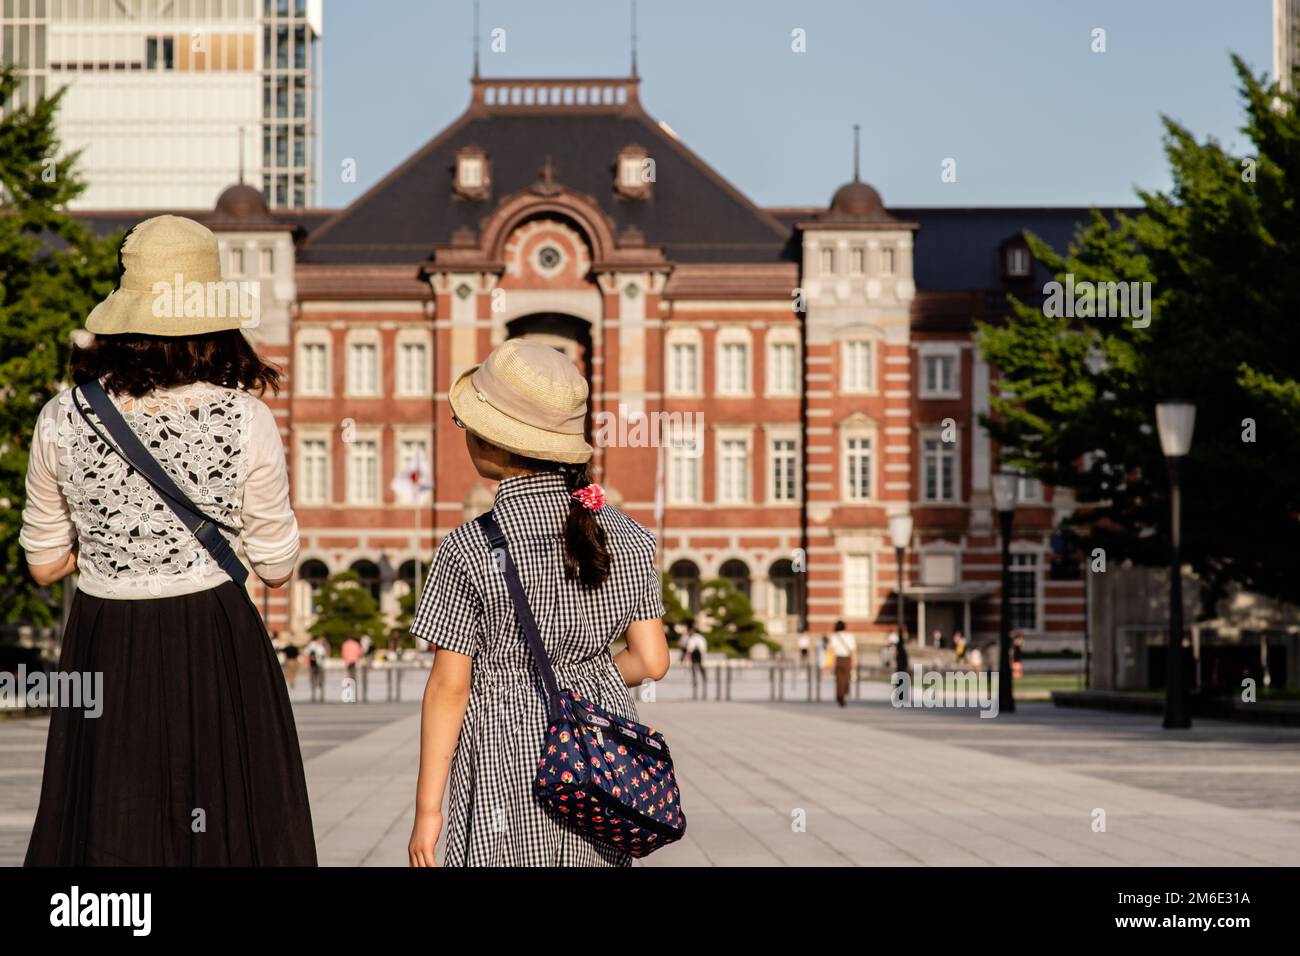 Tokio, Japan - 9 8 19: Mutter und Tochter standen vor dem Bahnhof Tokio zusammen Stockfoto